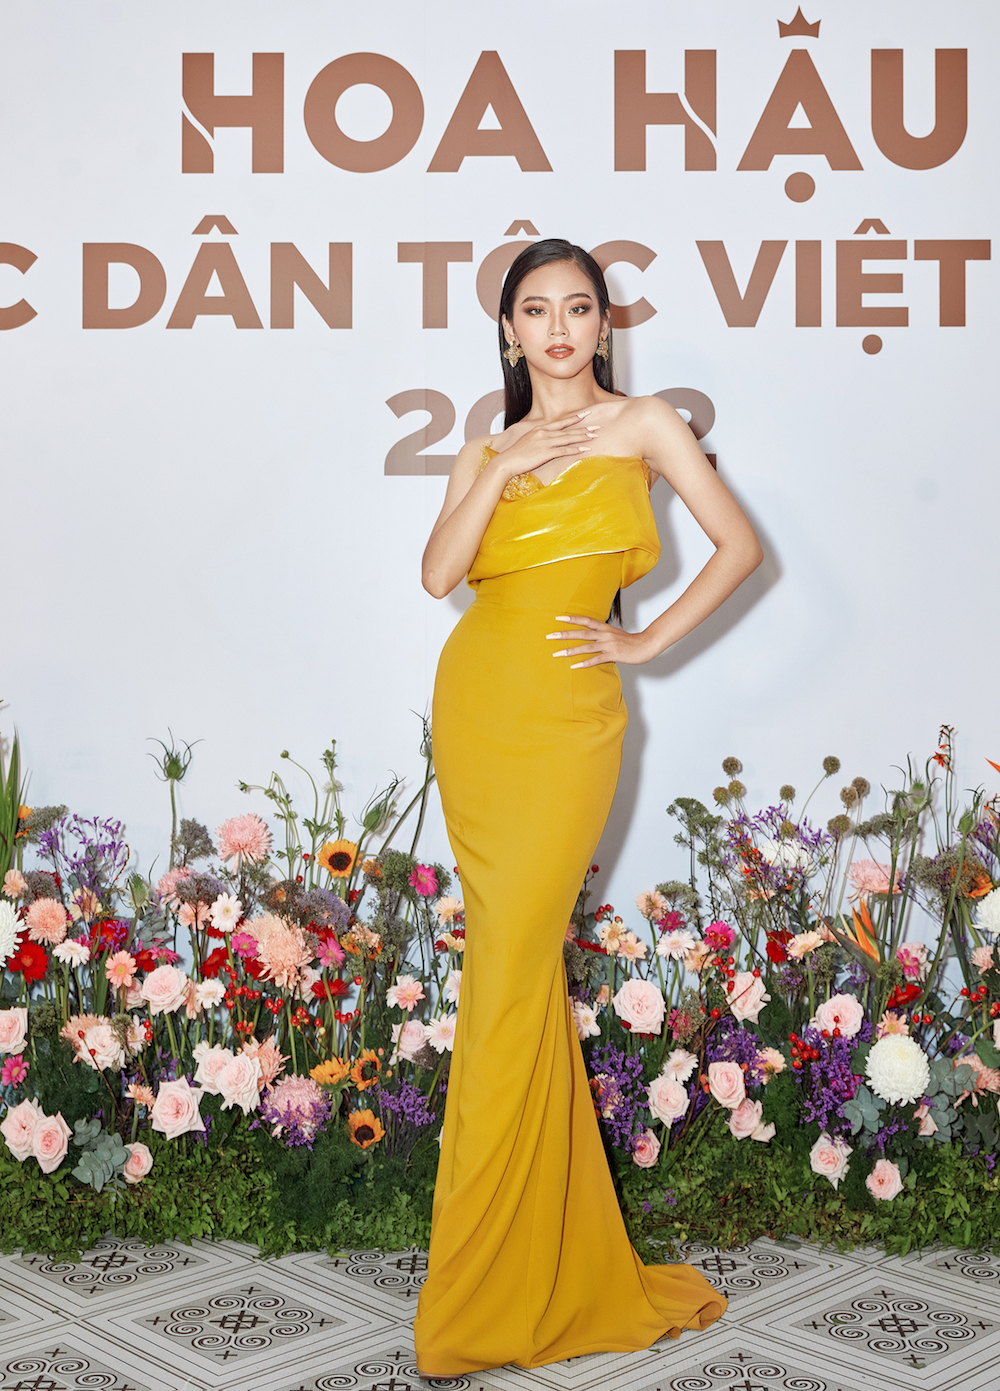 Hoa hau cac dan toc Viet Nam Tu Vy 1 - Profile ấn tượng của top 30 thí sinh vòng Chung khảo phía Nam – Hoa hậu các Dân tộc Việt Nam